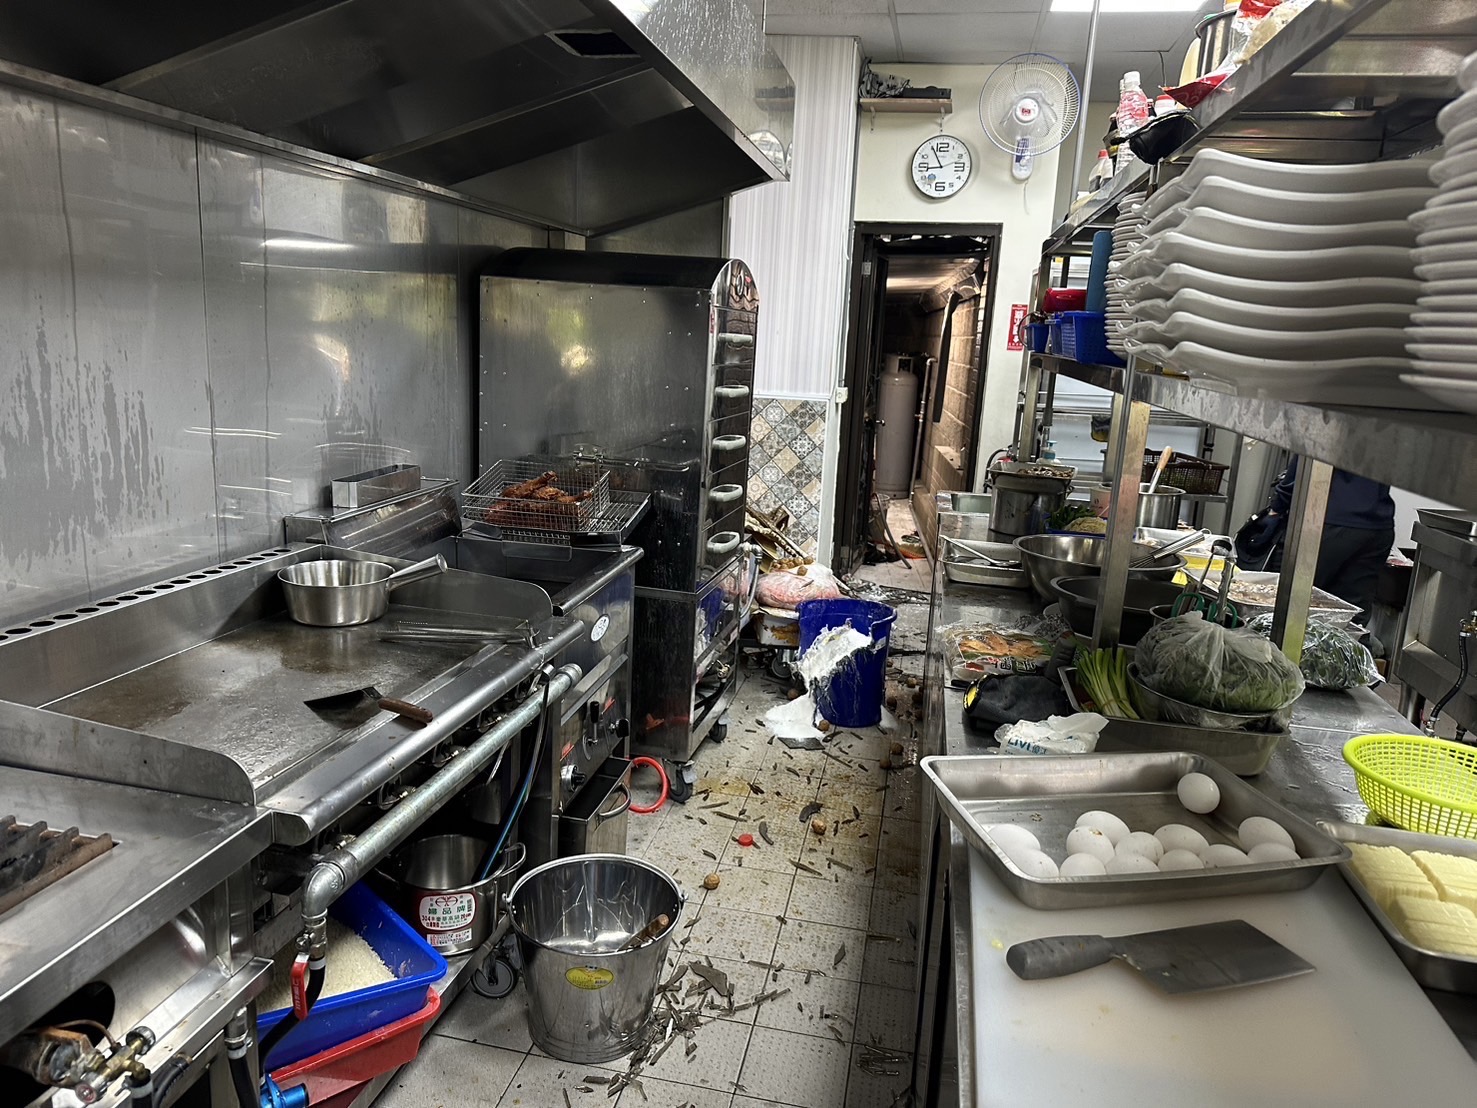 台中市大里区立元路一家新开张的自助餐店厨房，上午疑因煮食不慎，导致瓦斯管线气爆，现场一片狼藉。图／台中市消防局提供